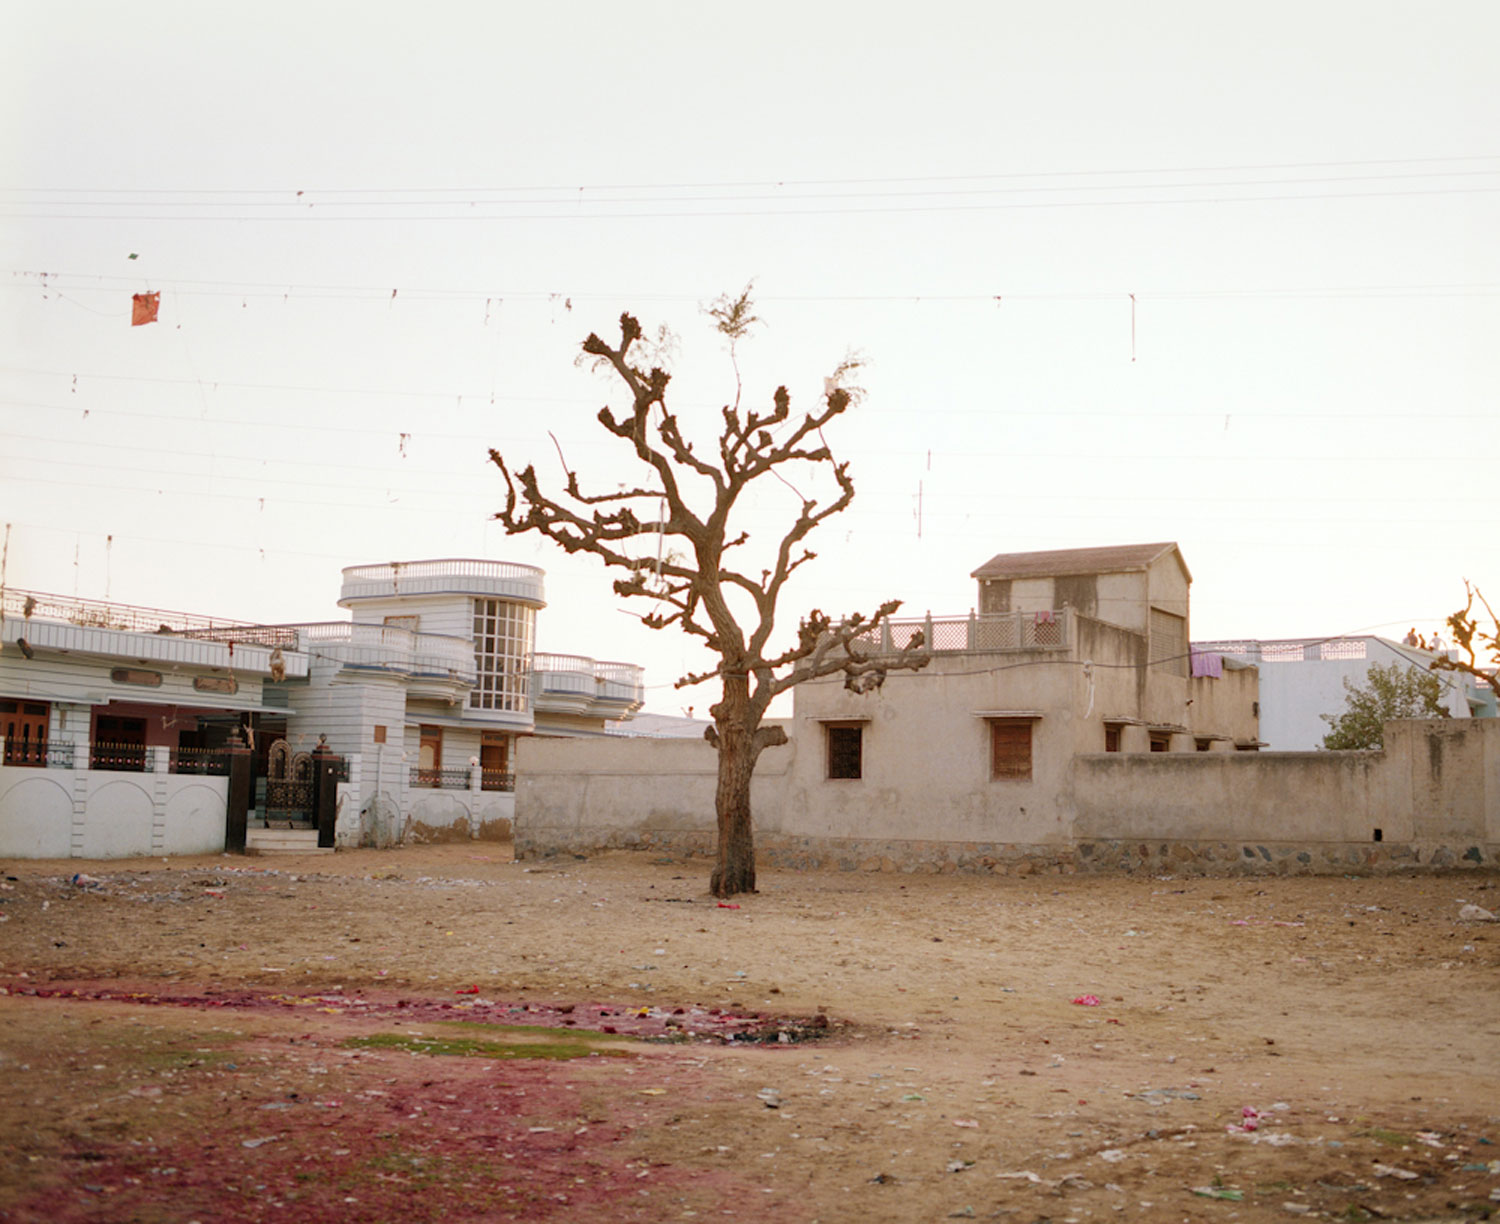 Tree &amp; Kite, Mandawa, Rajasthan 2010